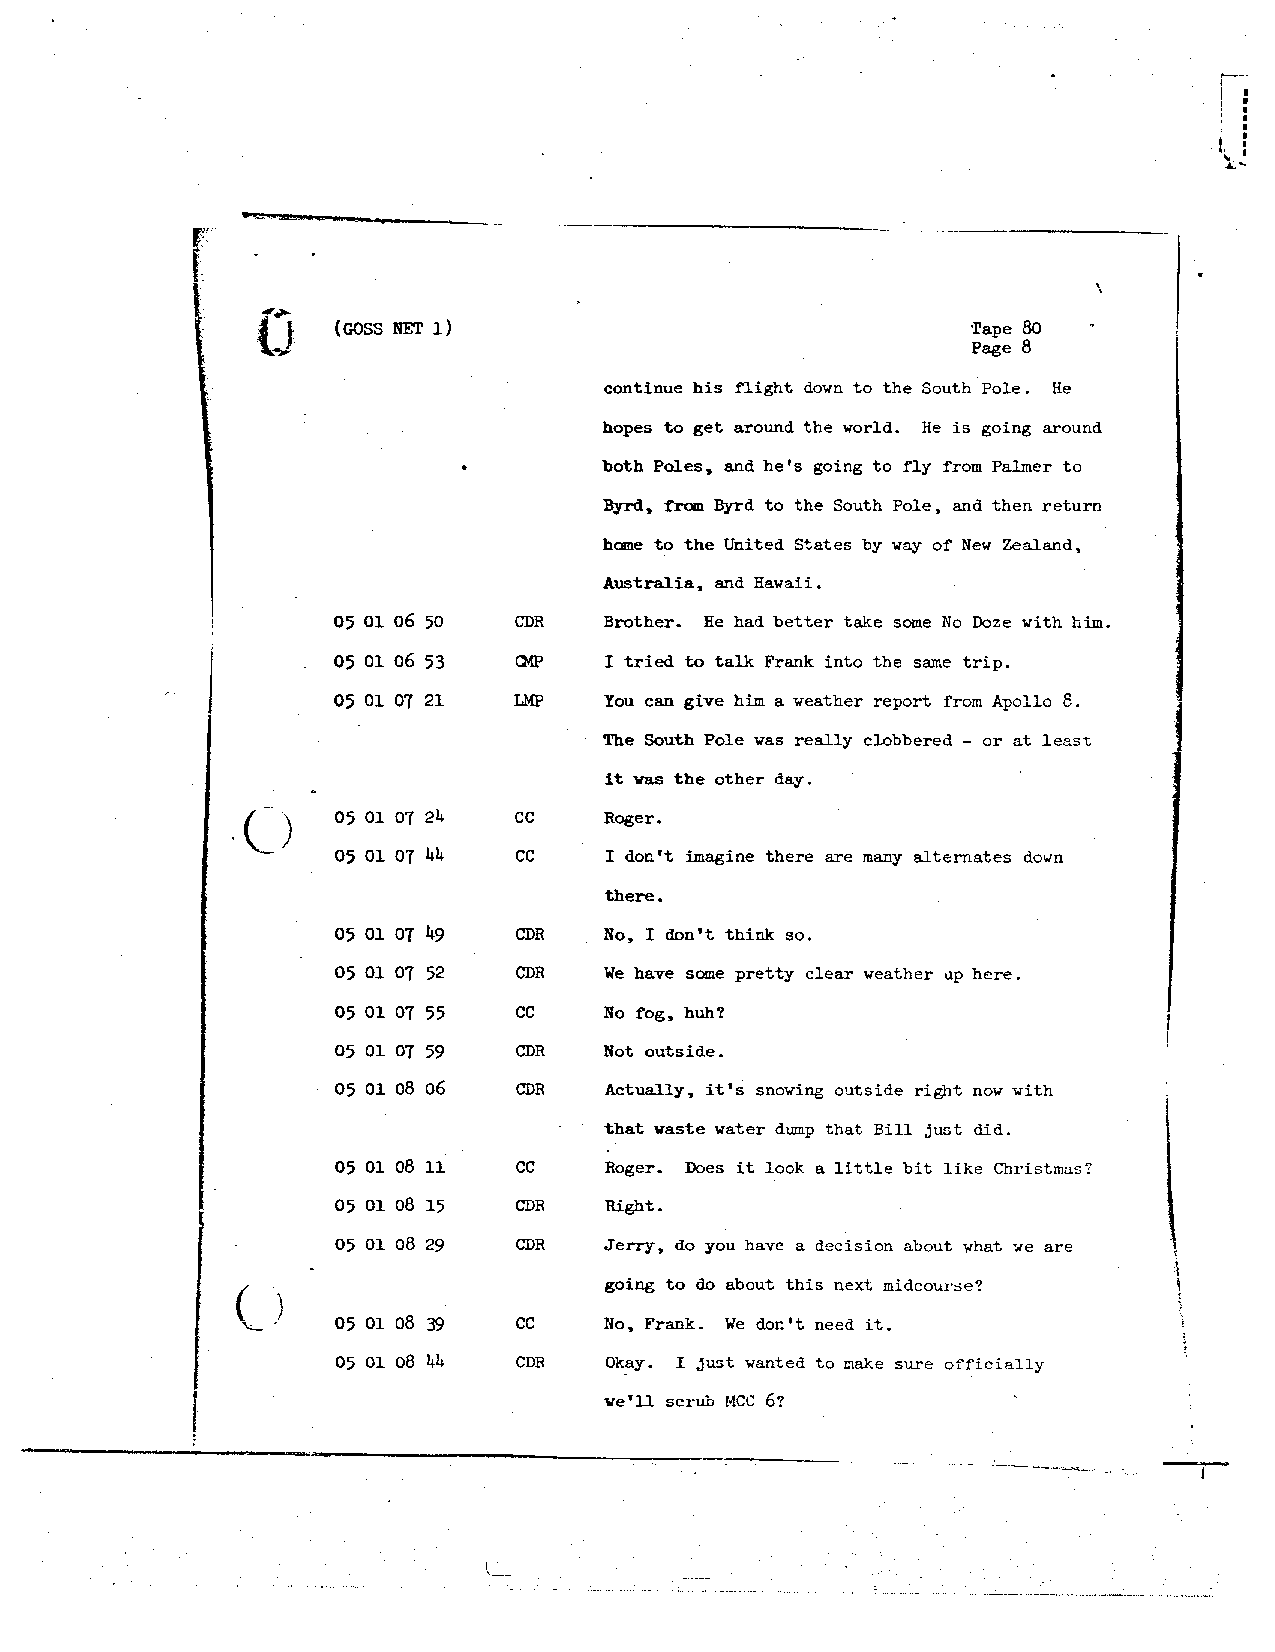 Page 665 of Apollo 8’s original transcript